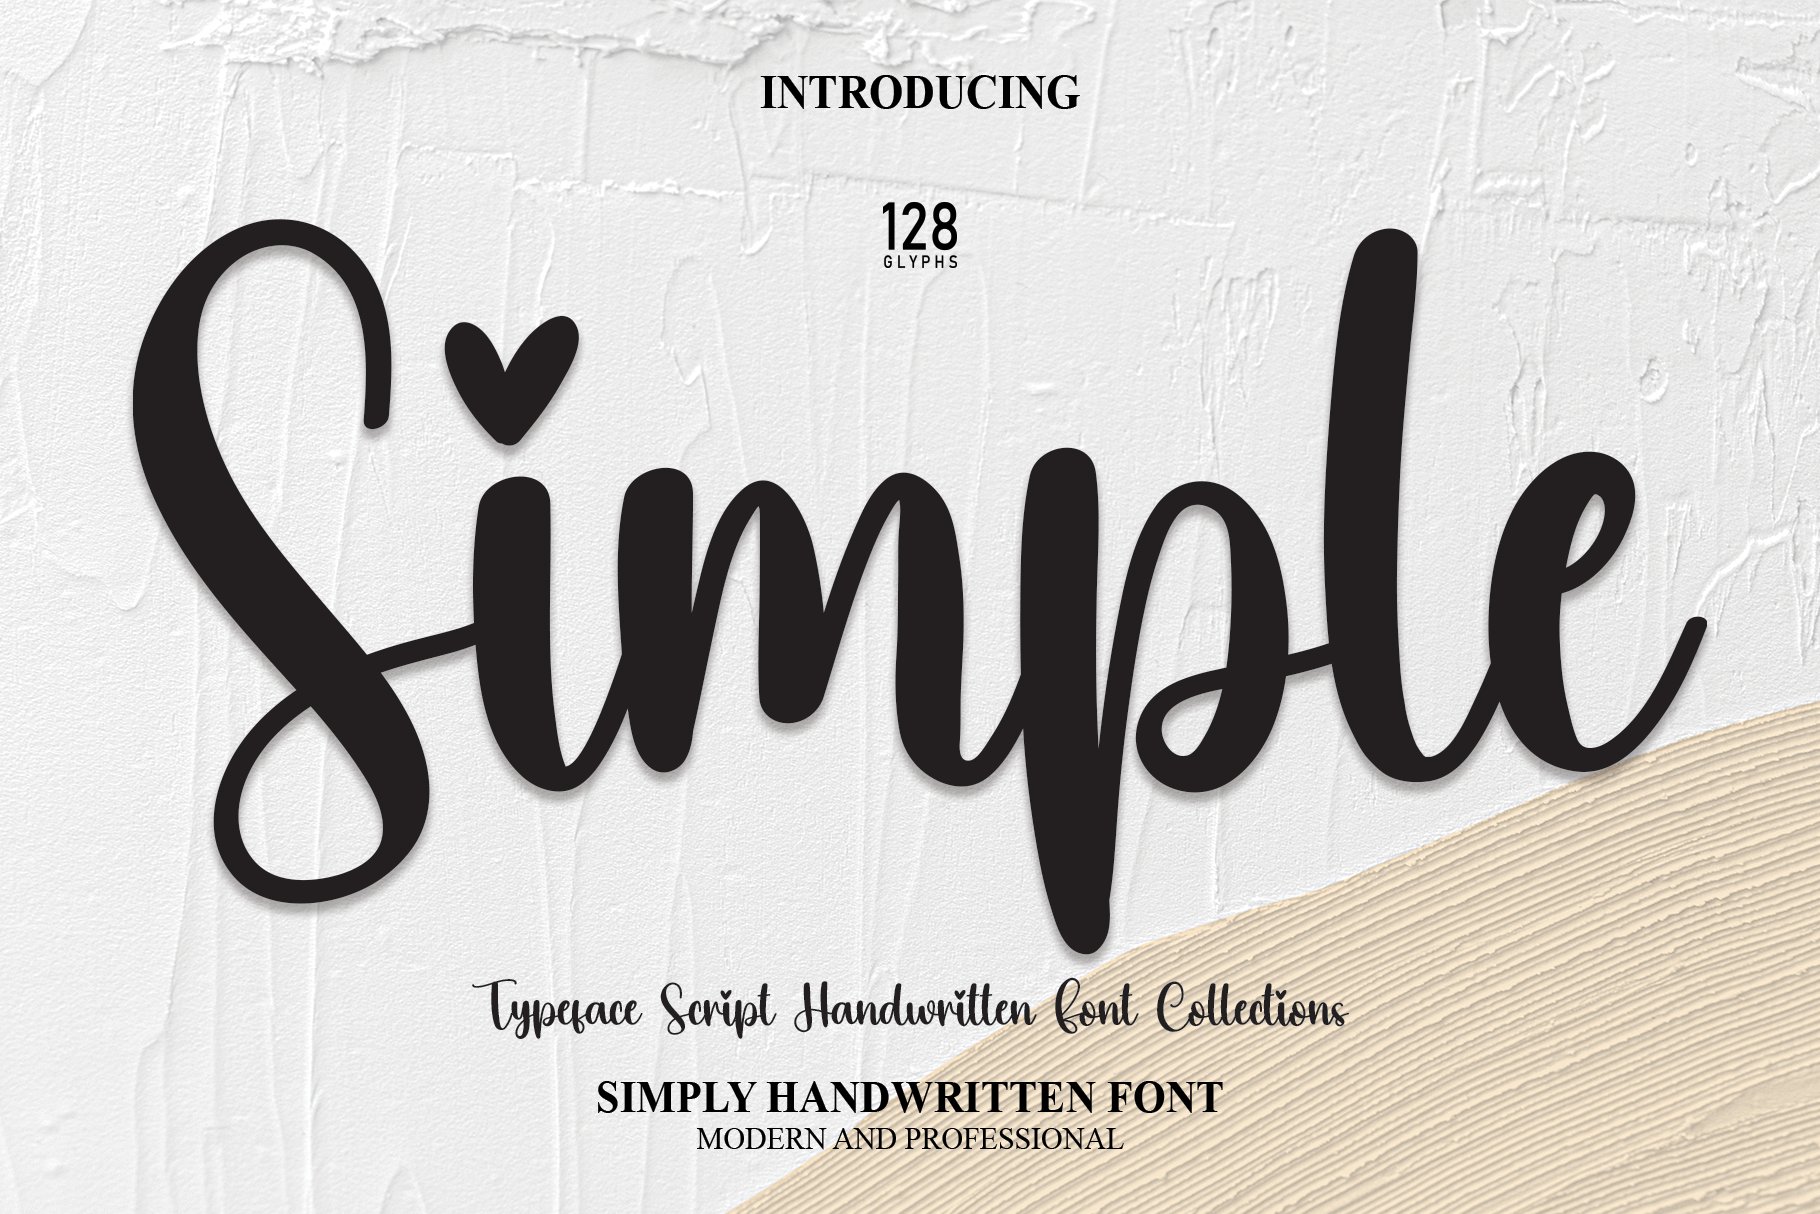 Simple | Script Font cover image.